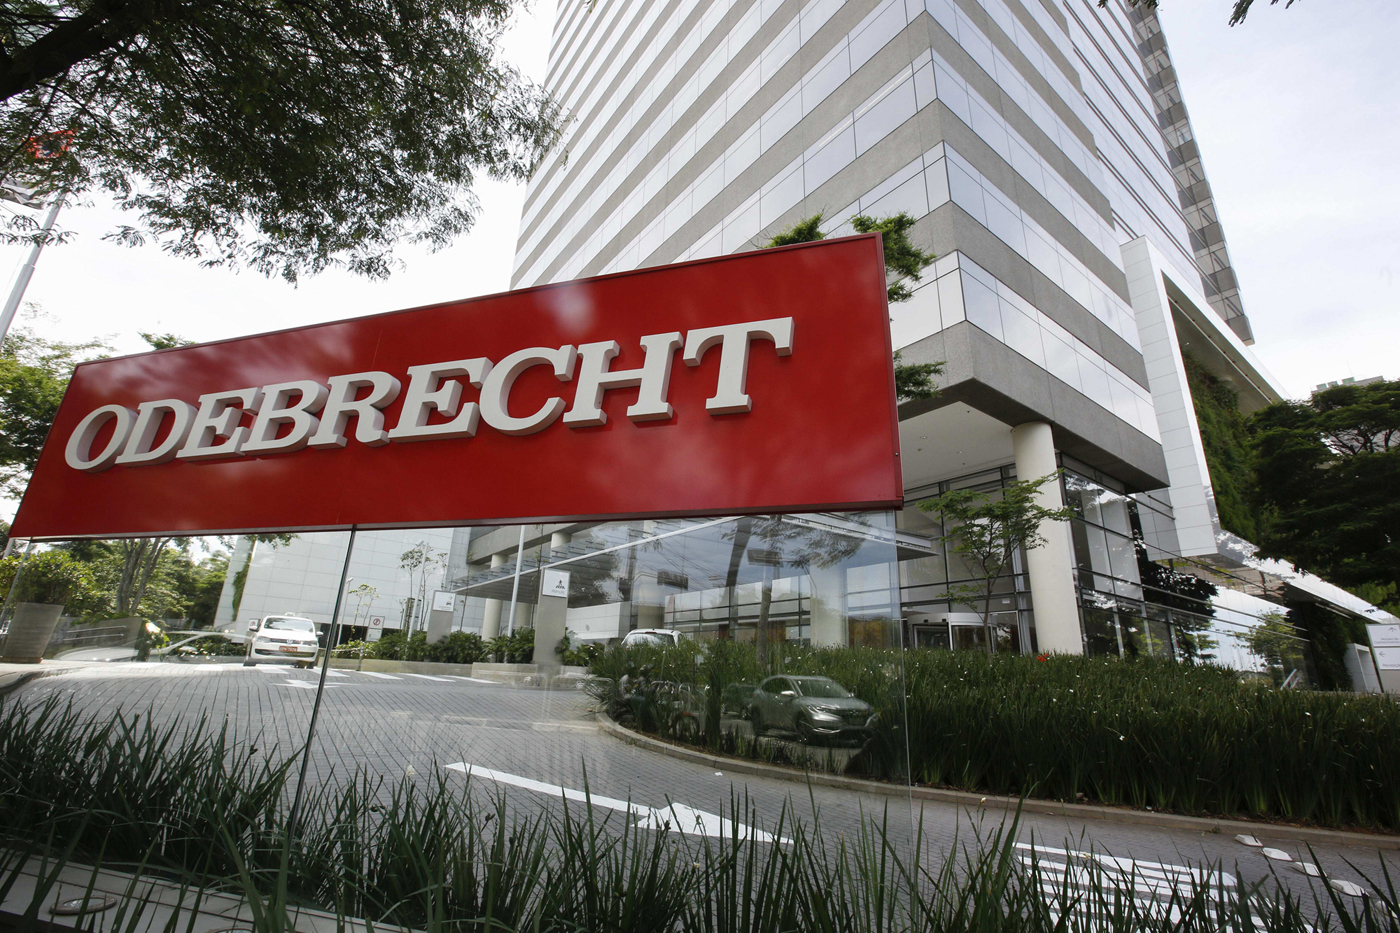 Odebrecht admite que pagó “impuesto guerrillero” a las Farc